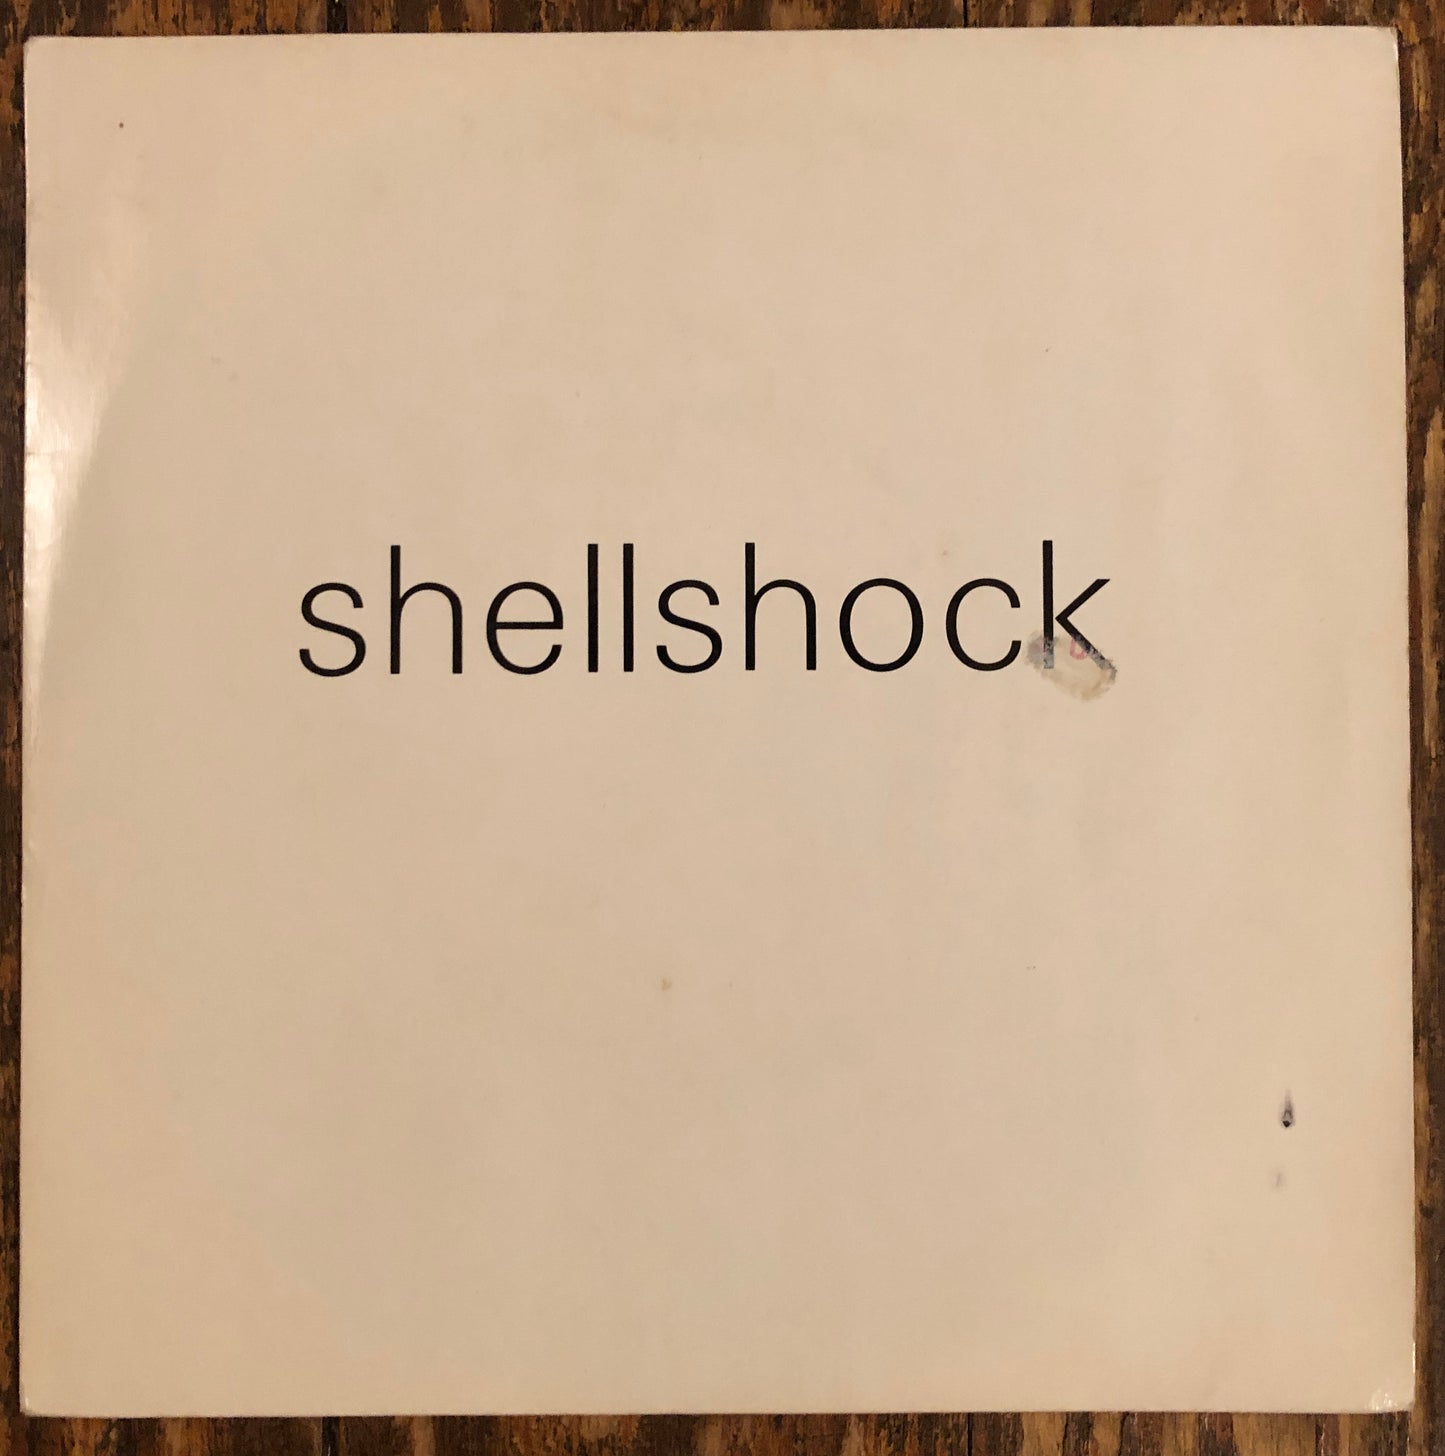 NEW ORDER "Shellshock"